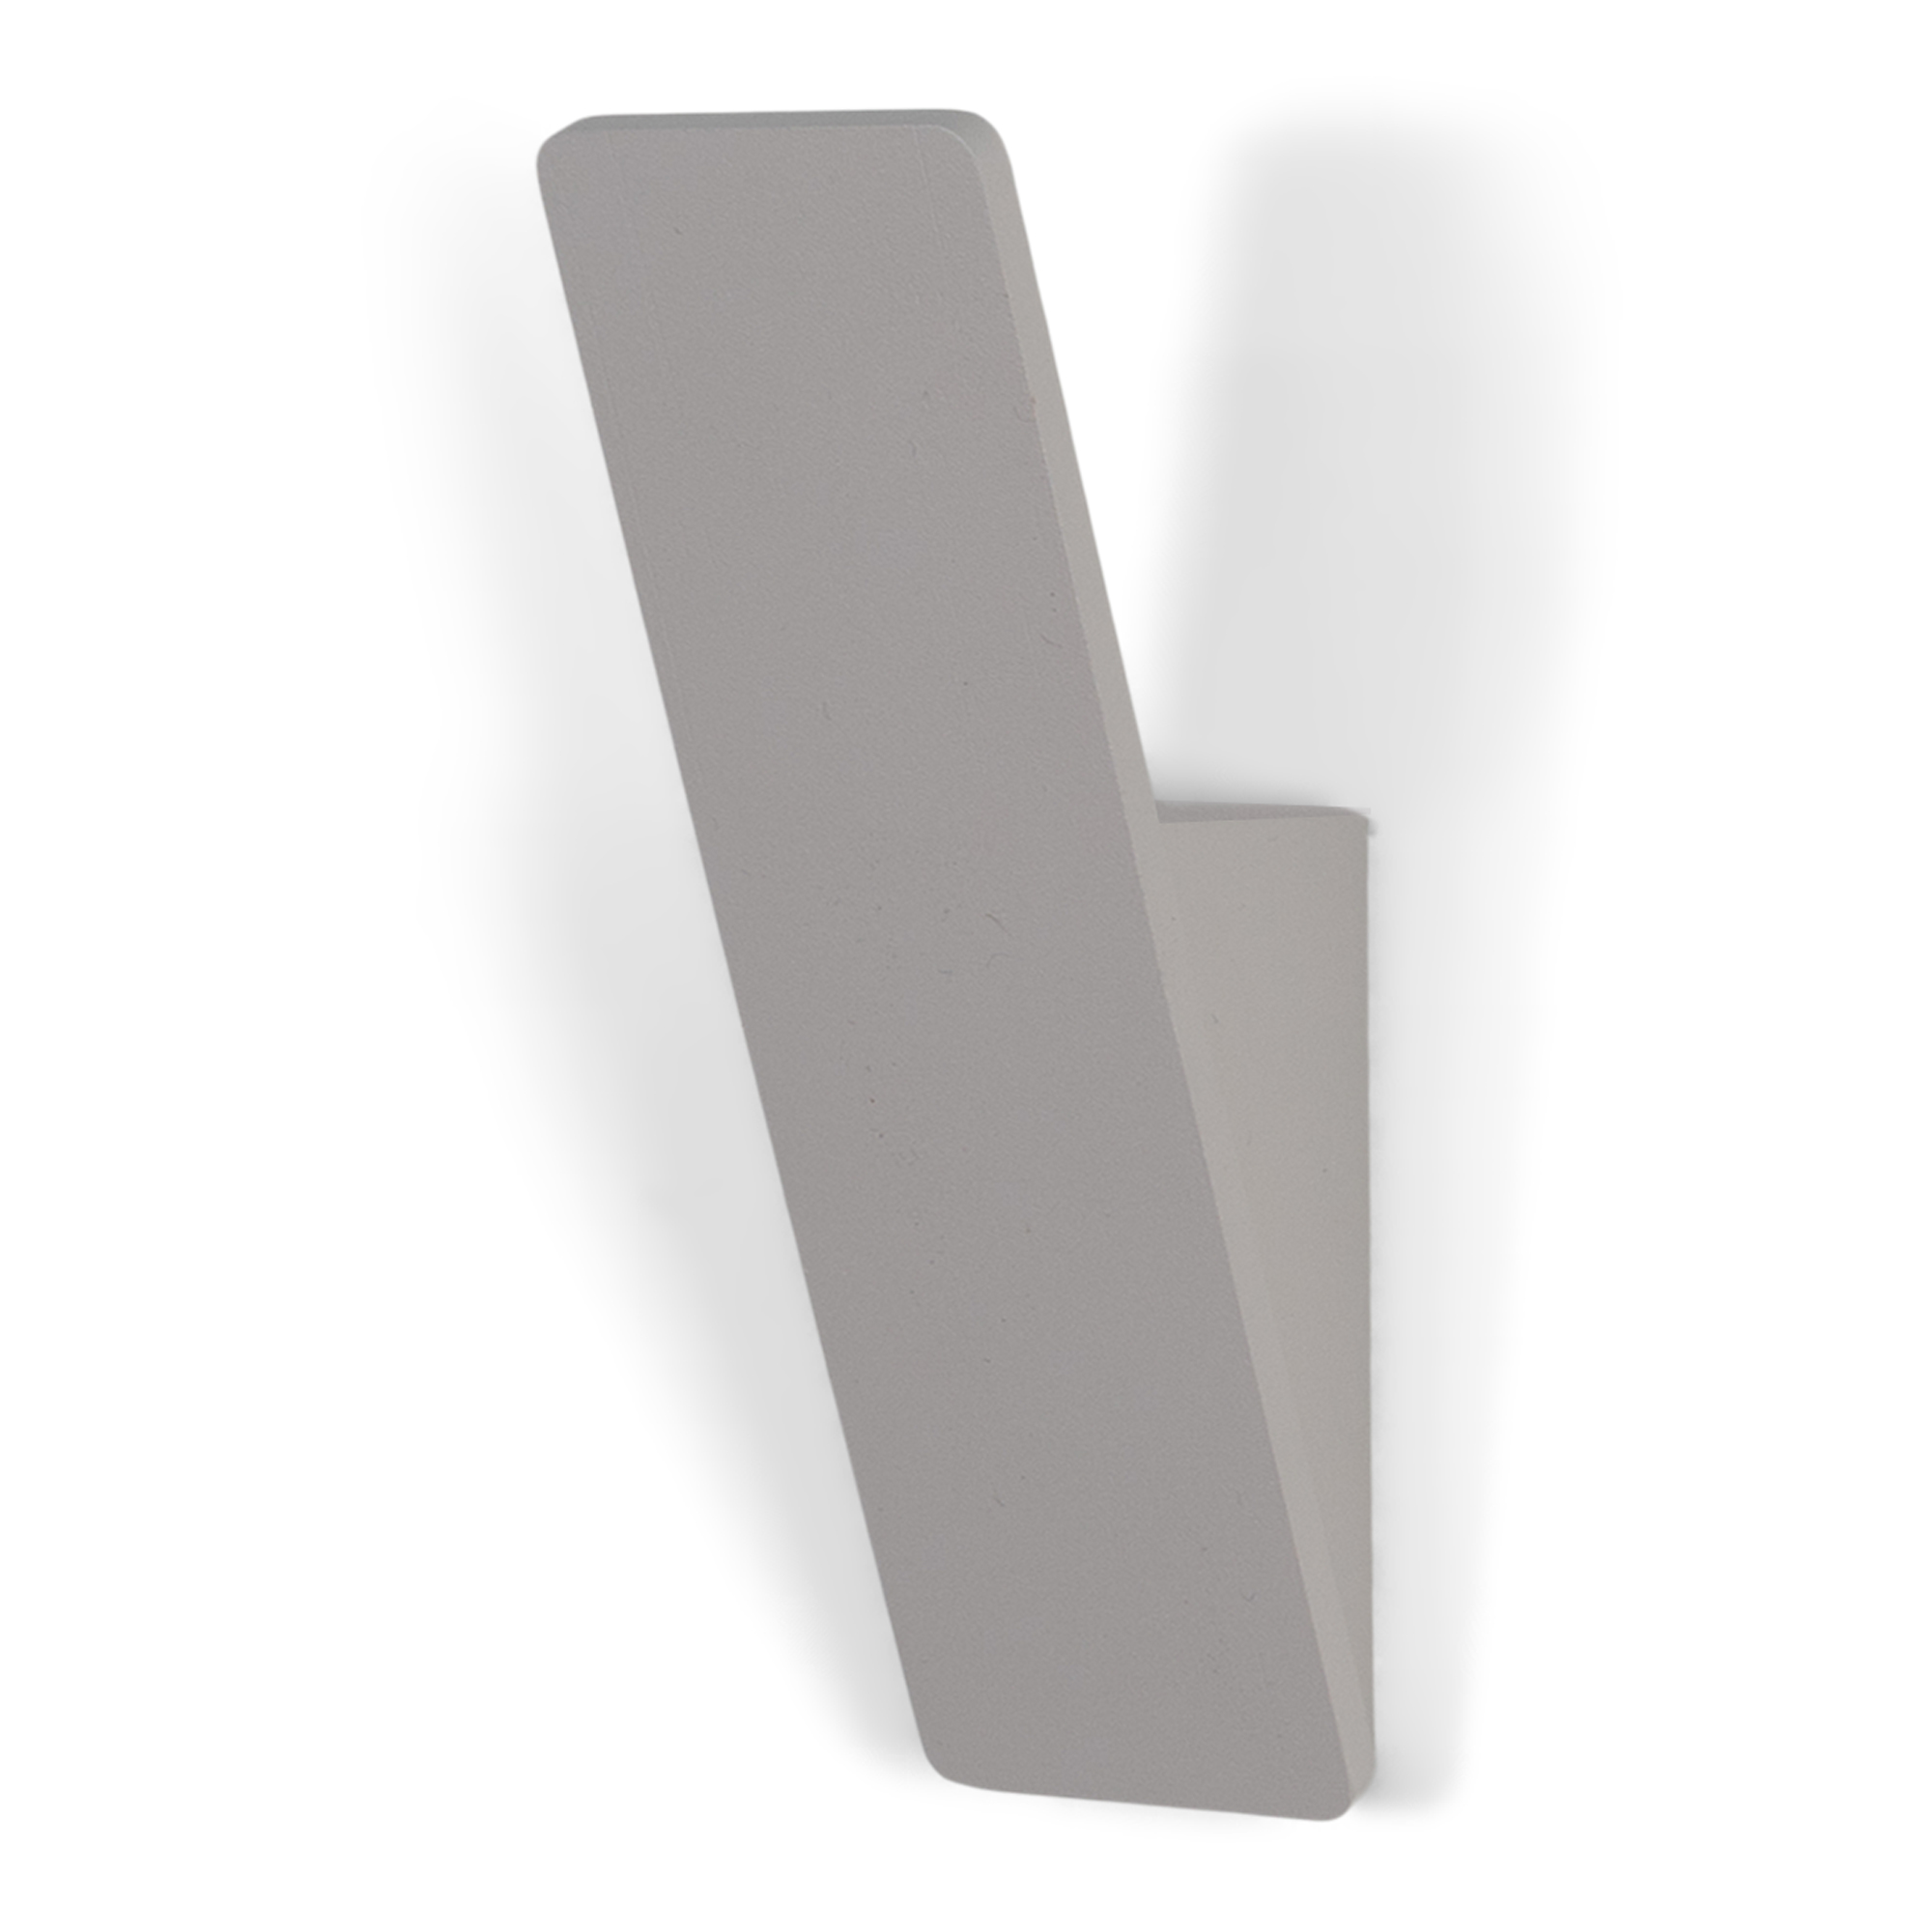 SPINDER DESIGN Angle 1 knagerække - silky taupe stål